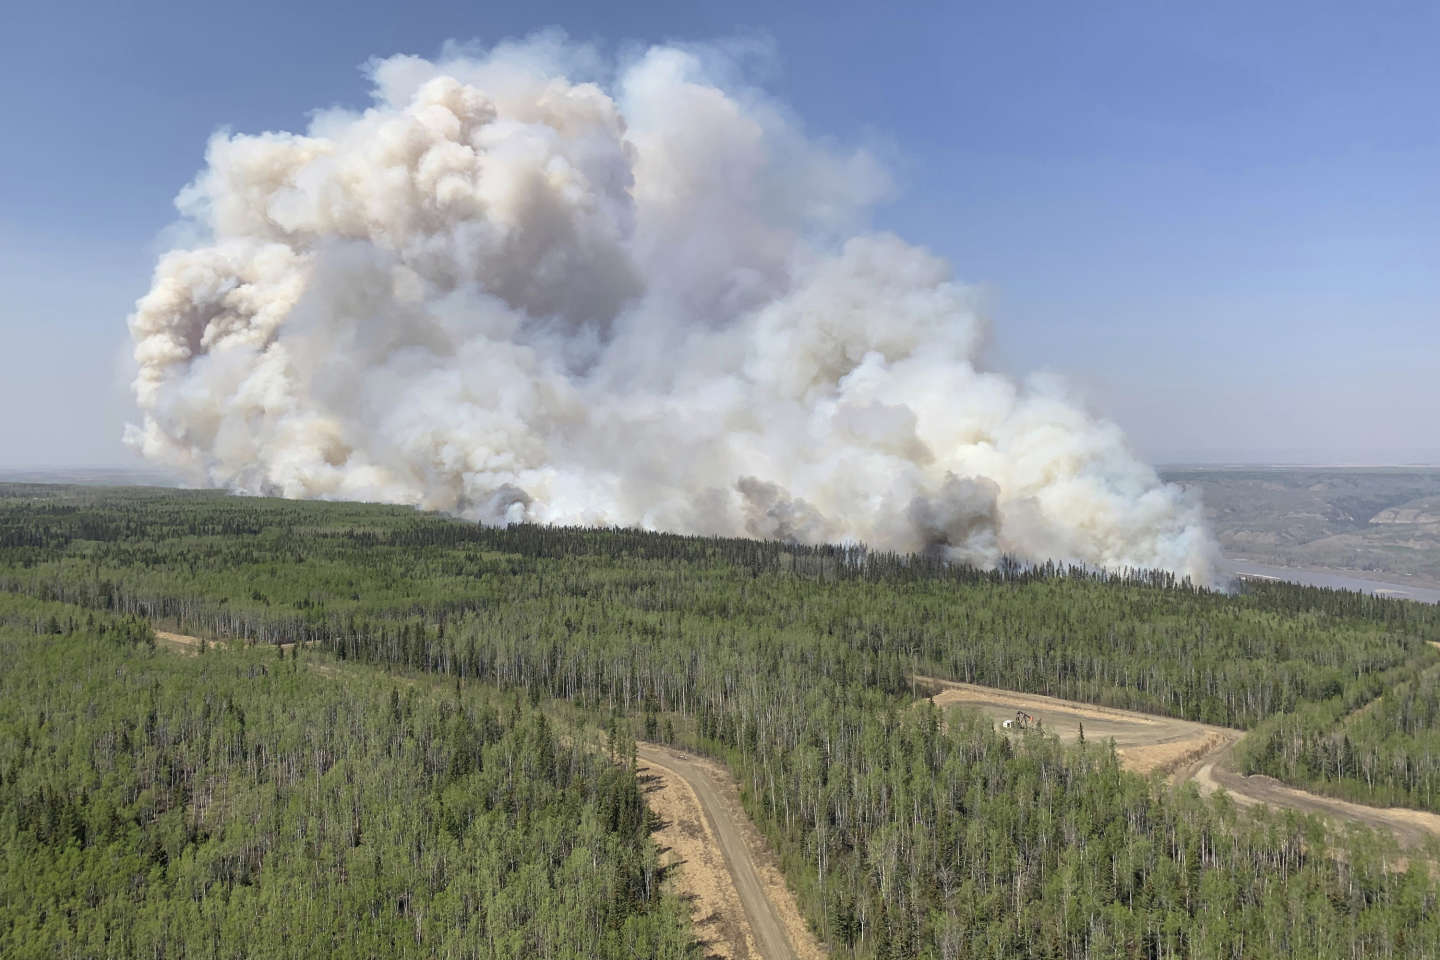 Nouvelles évacuations à cause des incendies dans l’ouest du Canada